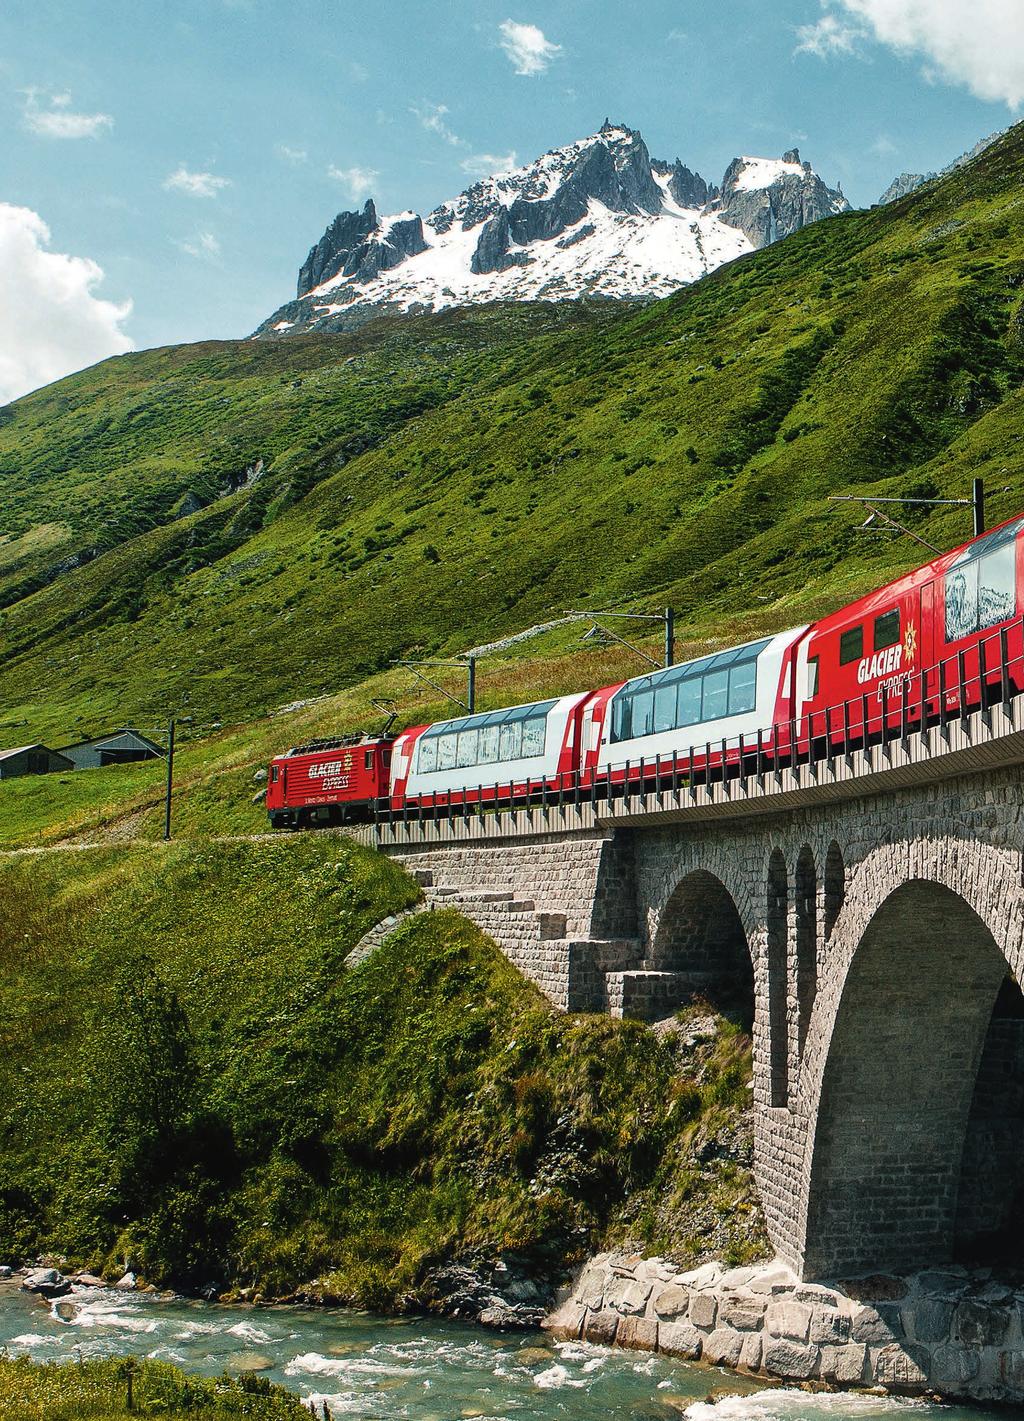 Grand Train Tour of Switzerland.